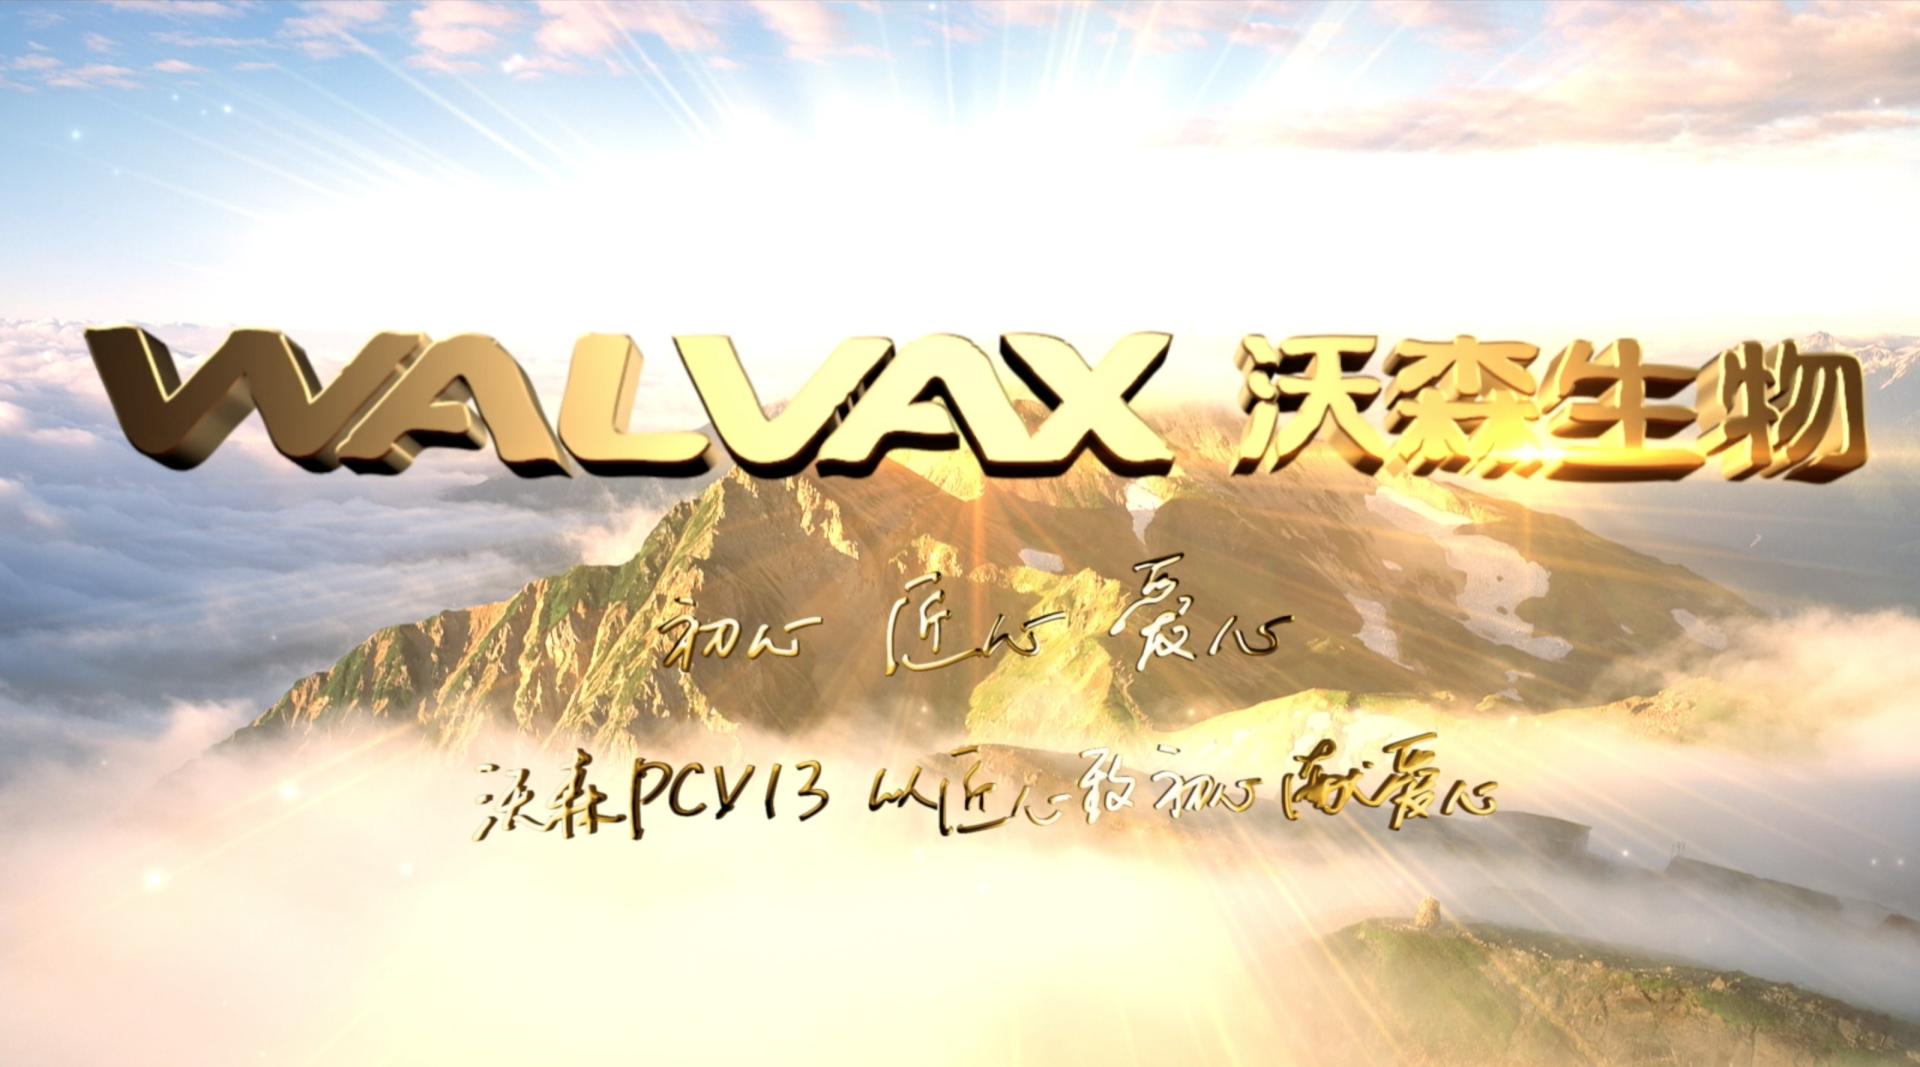 WALVAX沃森生物PCV13宣传片